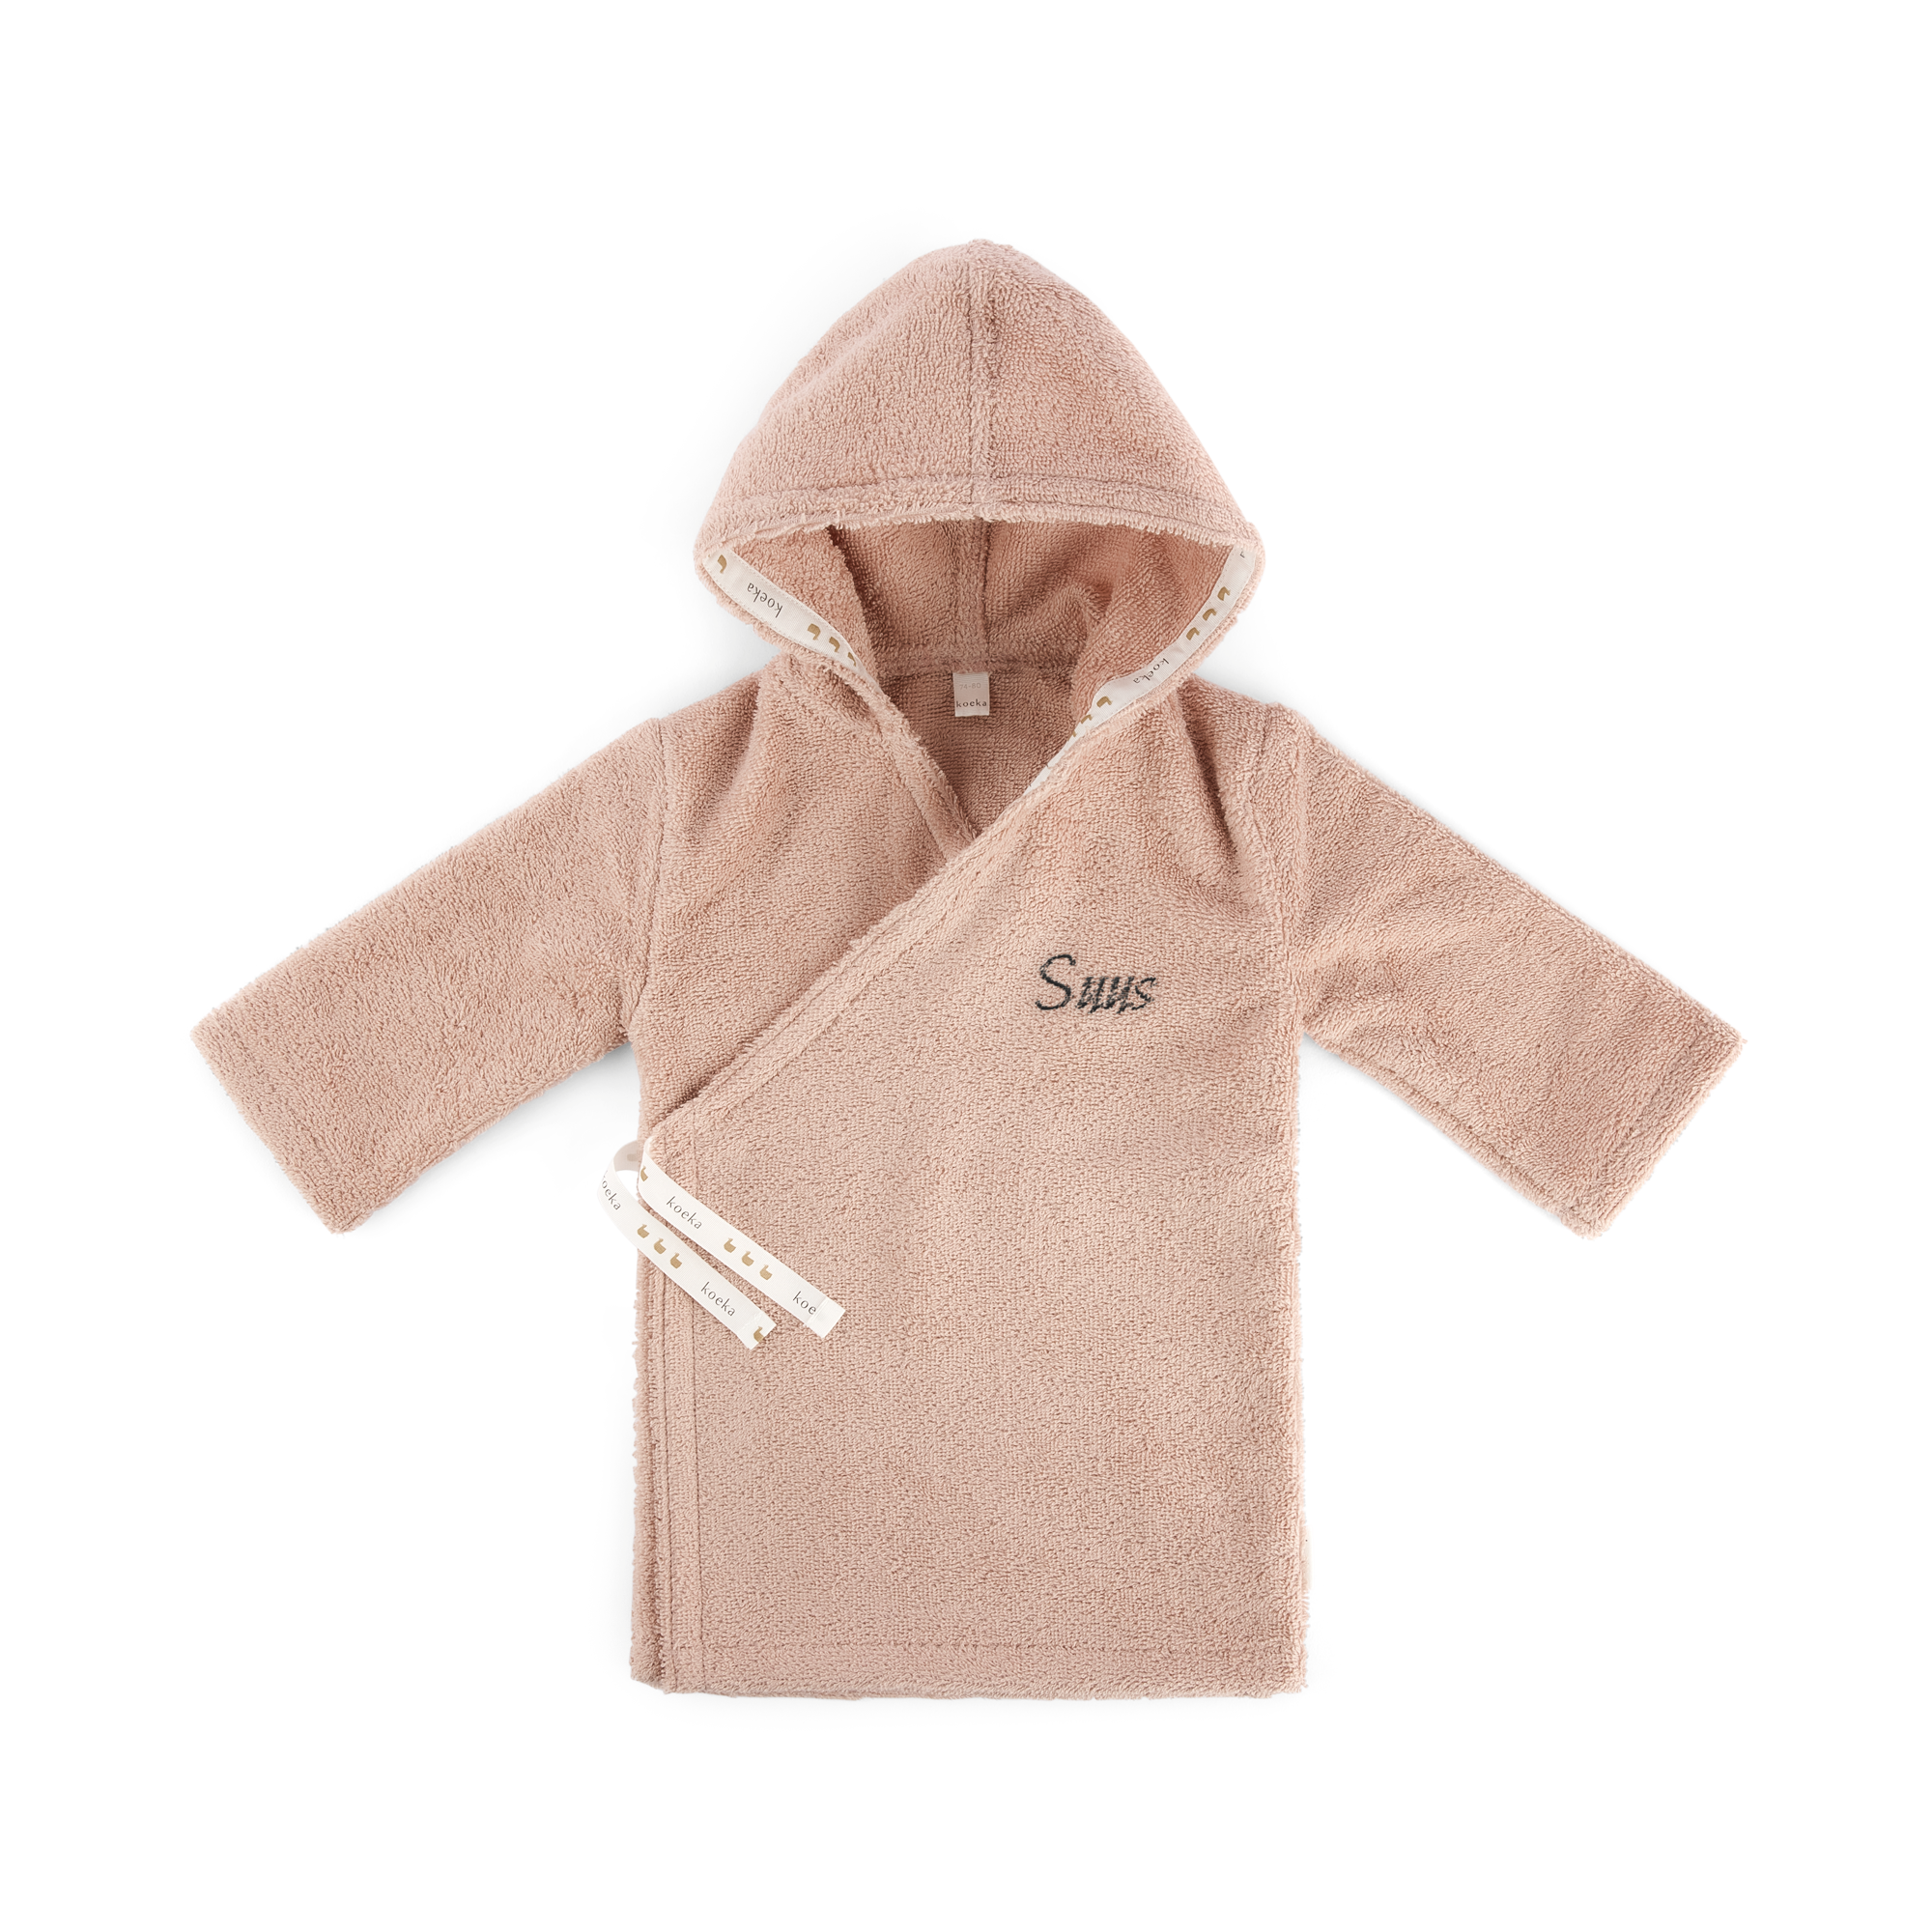 Babybadjas met naam borduren - 62/68 - Roze